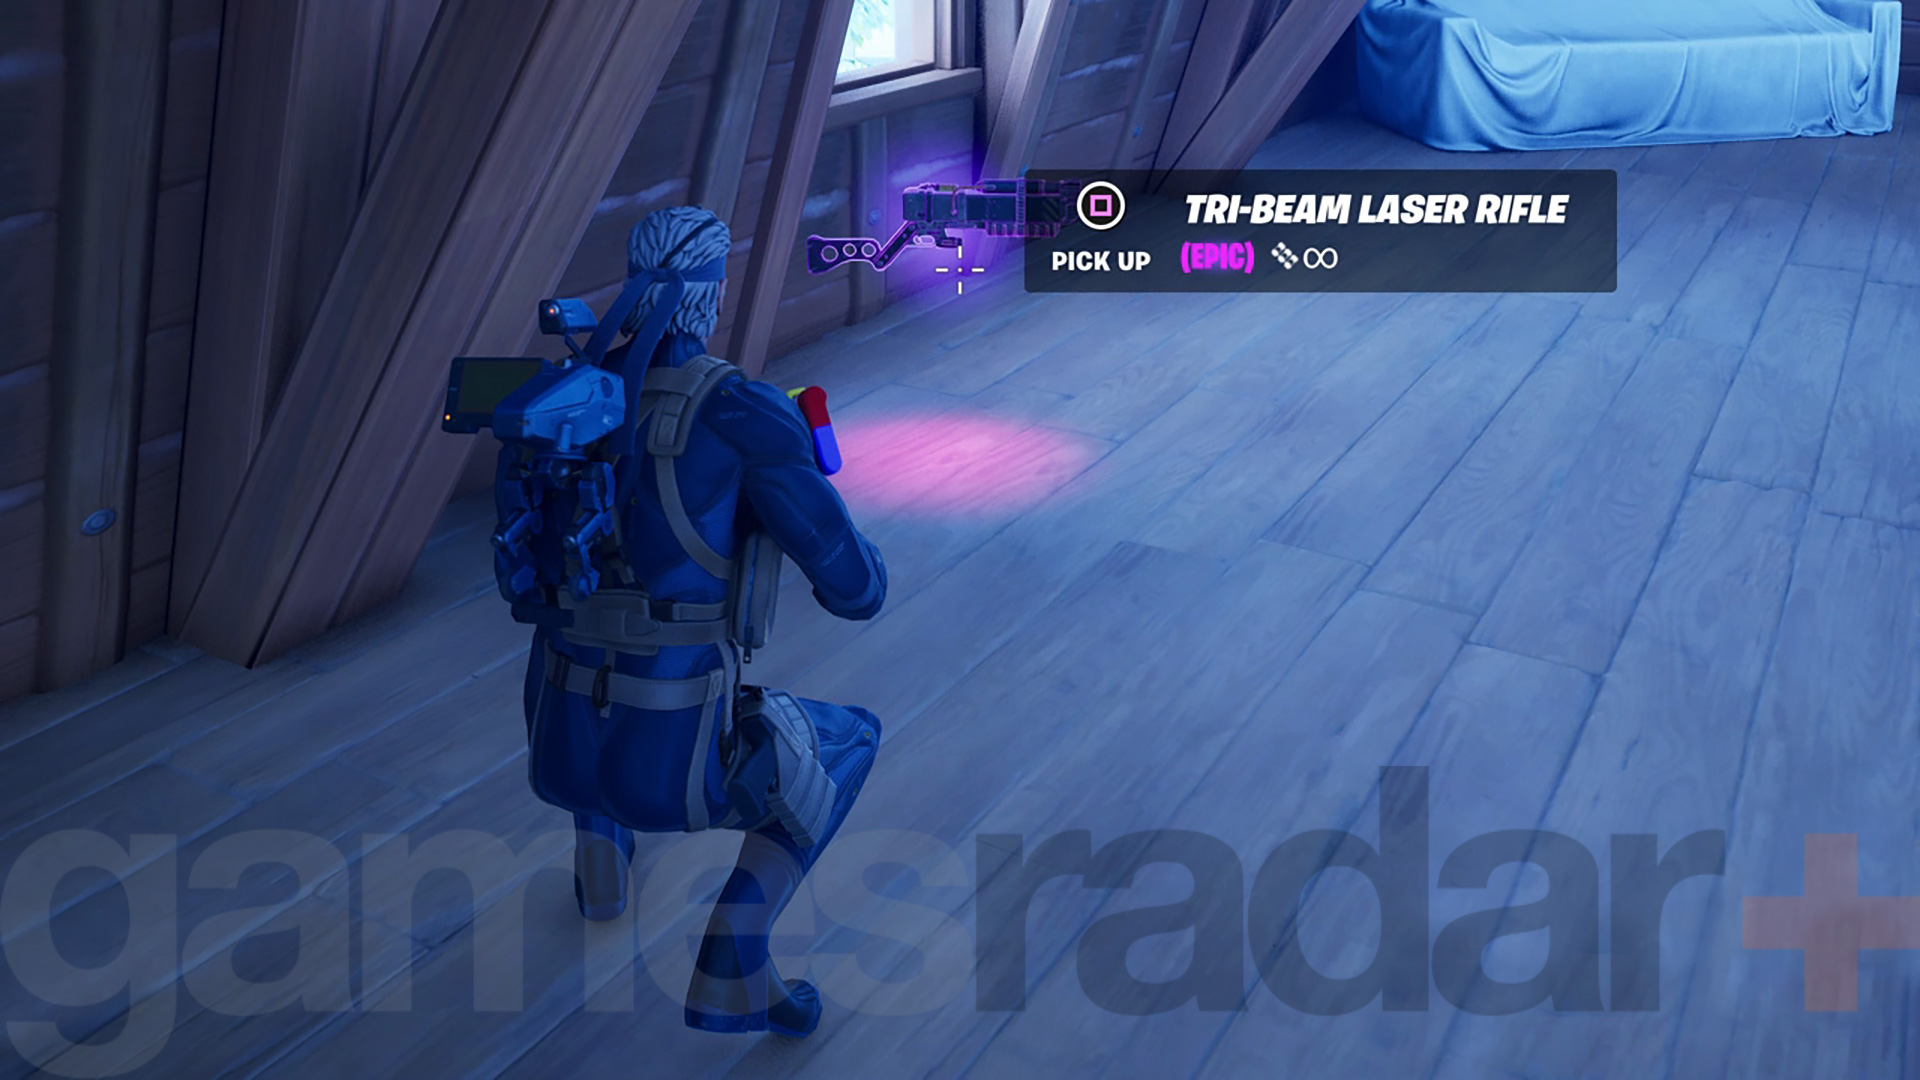 Nalezení laserové pušky Tri-Beam ve hře Fortnite jako kořisti v patře